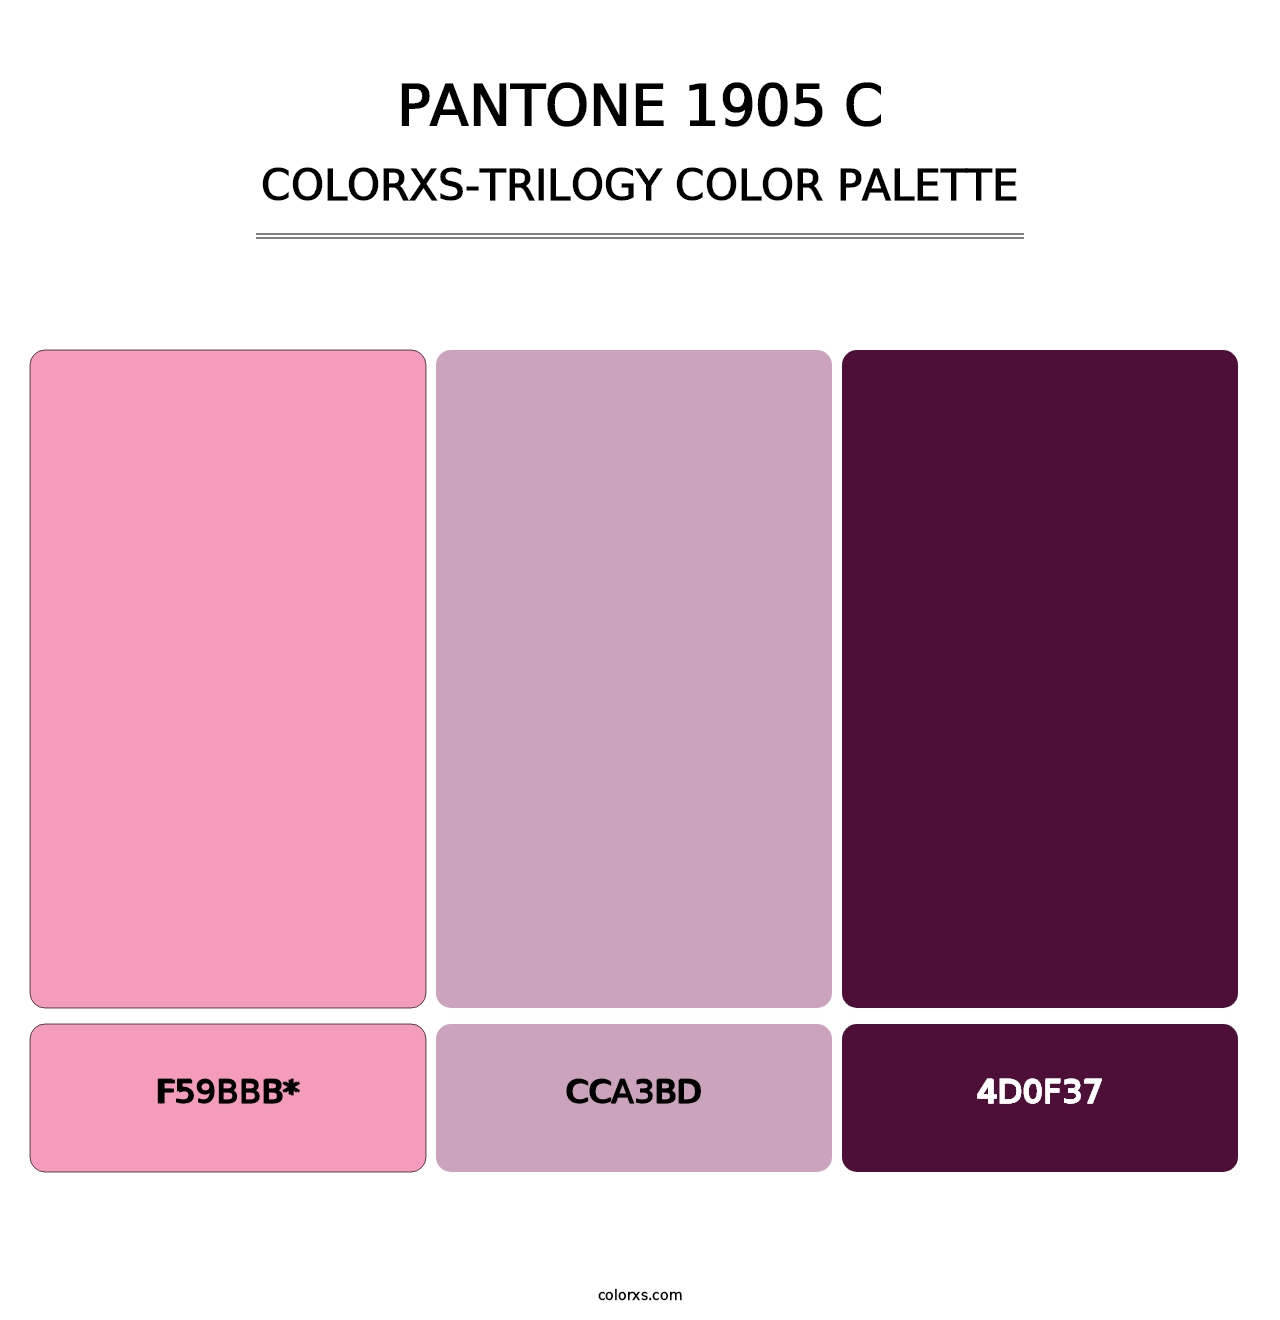 PANTONE 1905 C - Colorxs Trilogy Palette